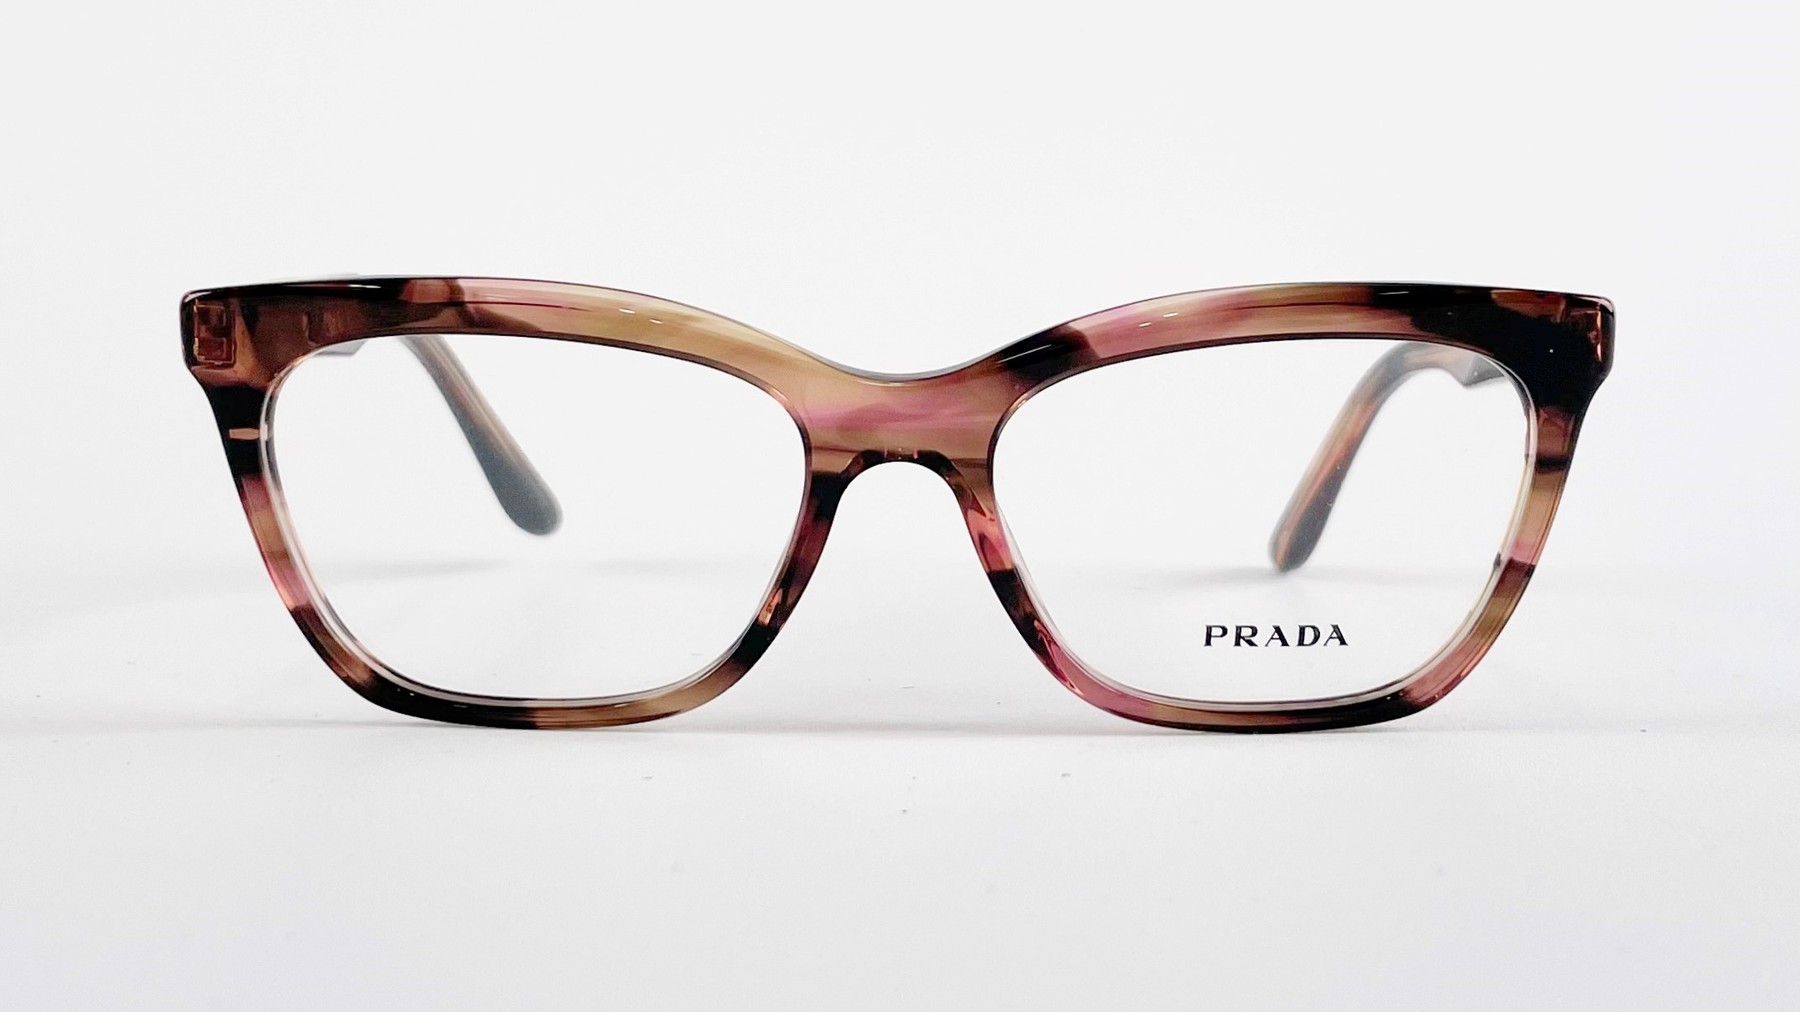 PRADA VPR 24S, Korean glasses, sunglasses, eyeglasses, glasses